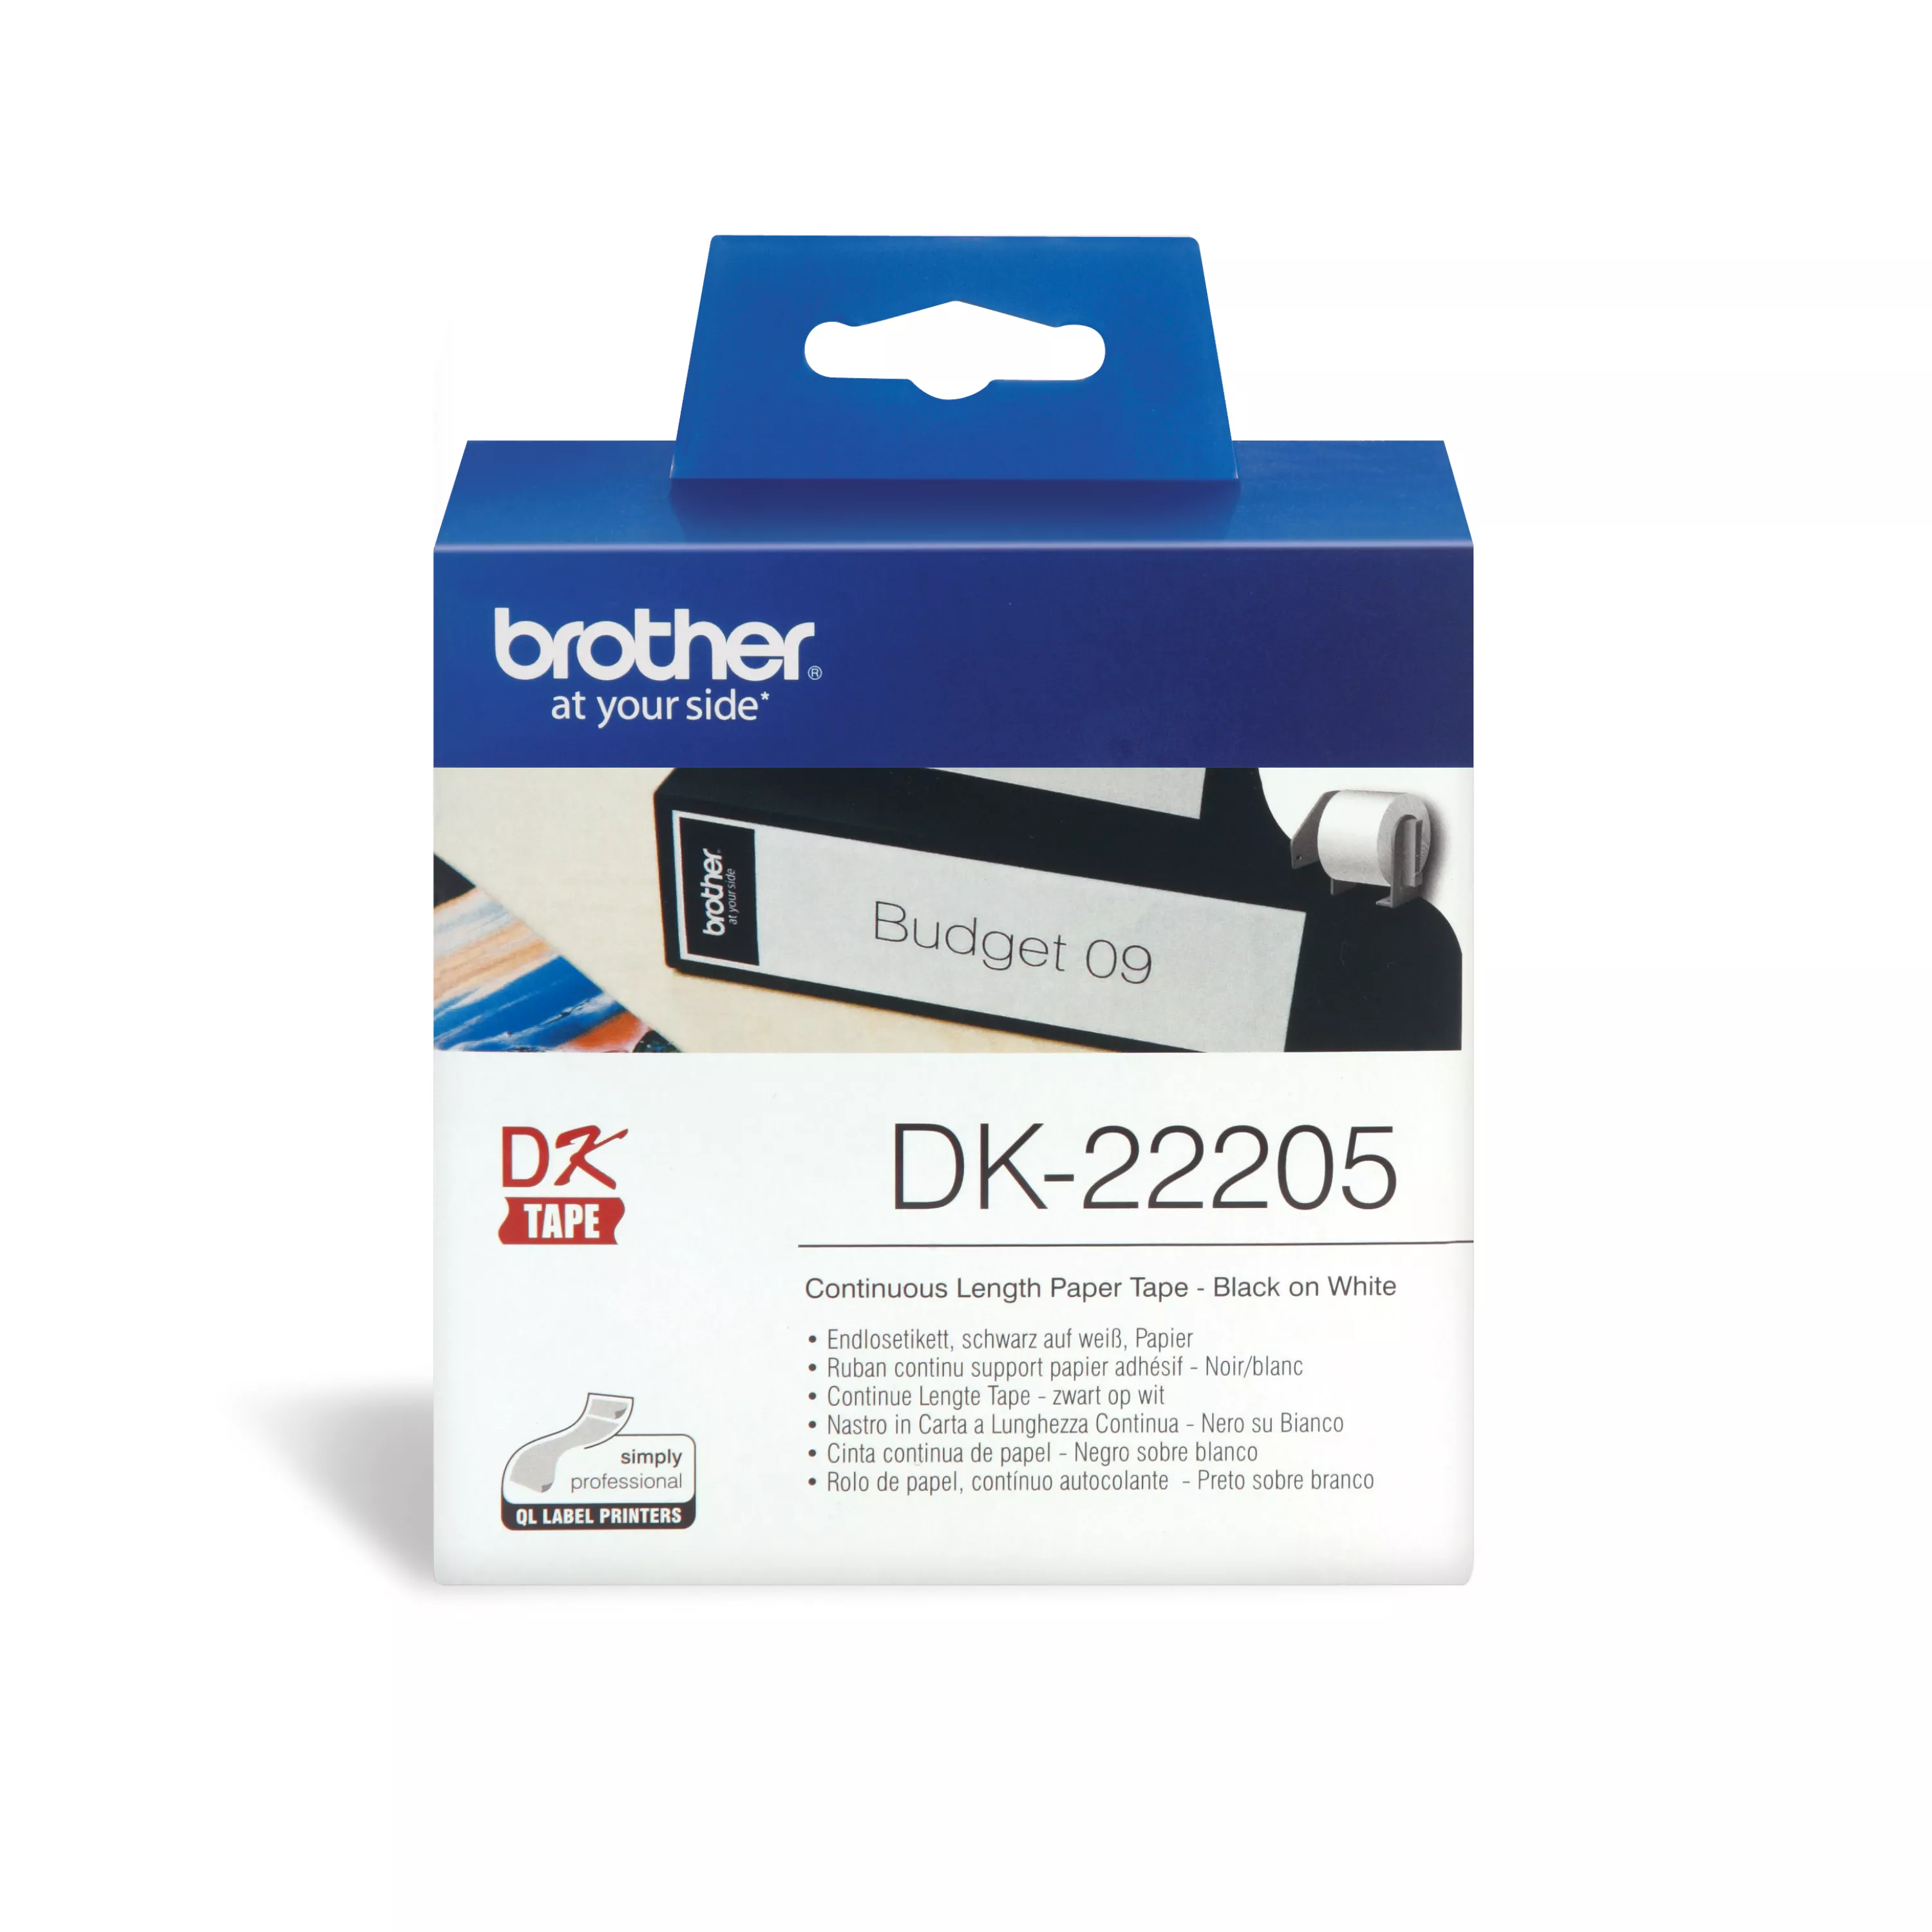 Vente BROTHER P-TOUCH DK-22205 continue length papier 62mm Brother au meilleur prix - visuel 6